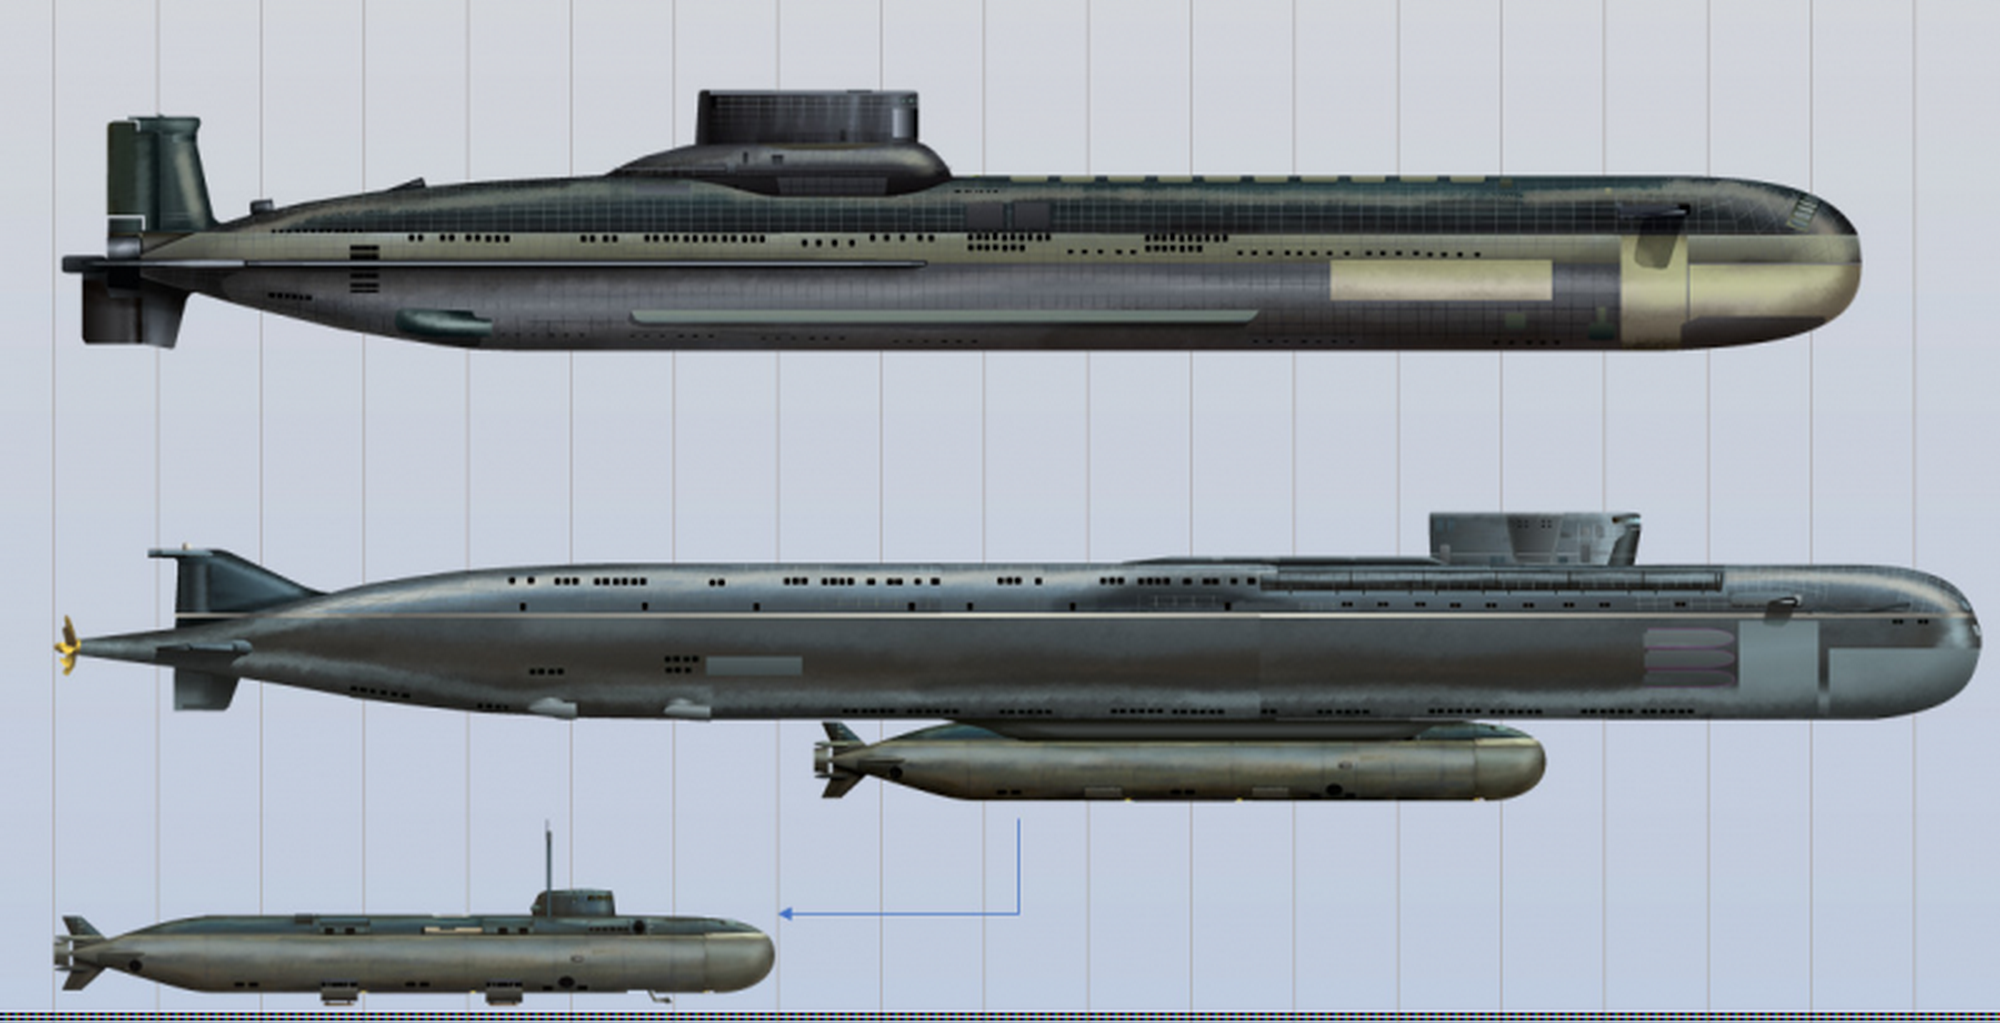 Пл характеристики. Подводная лодка Белгород проекта 09852. Атомная субмарина проекта 09852 "Белгород". АПЛ К-329 «Белгород». Подводная лодка к-329 Белгород.